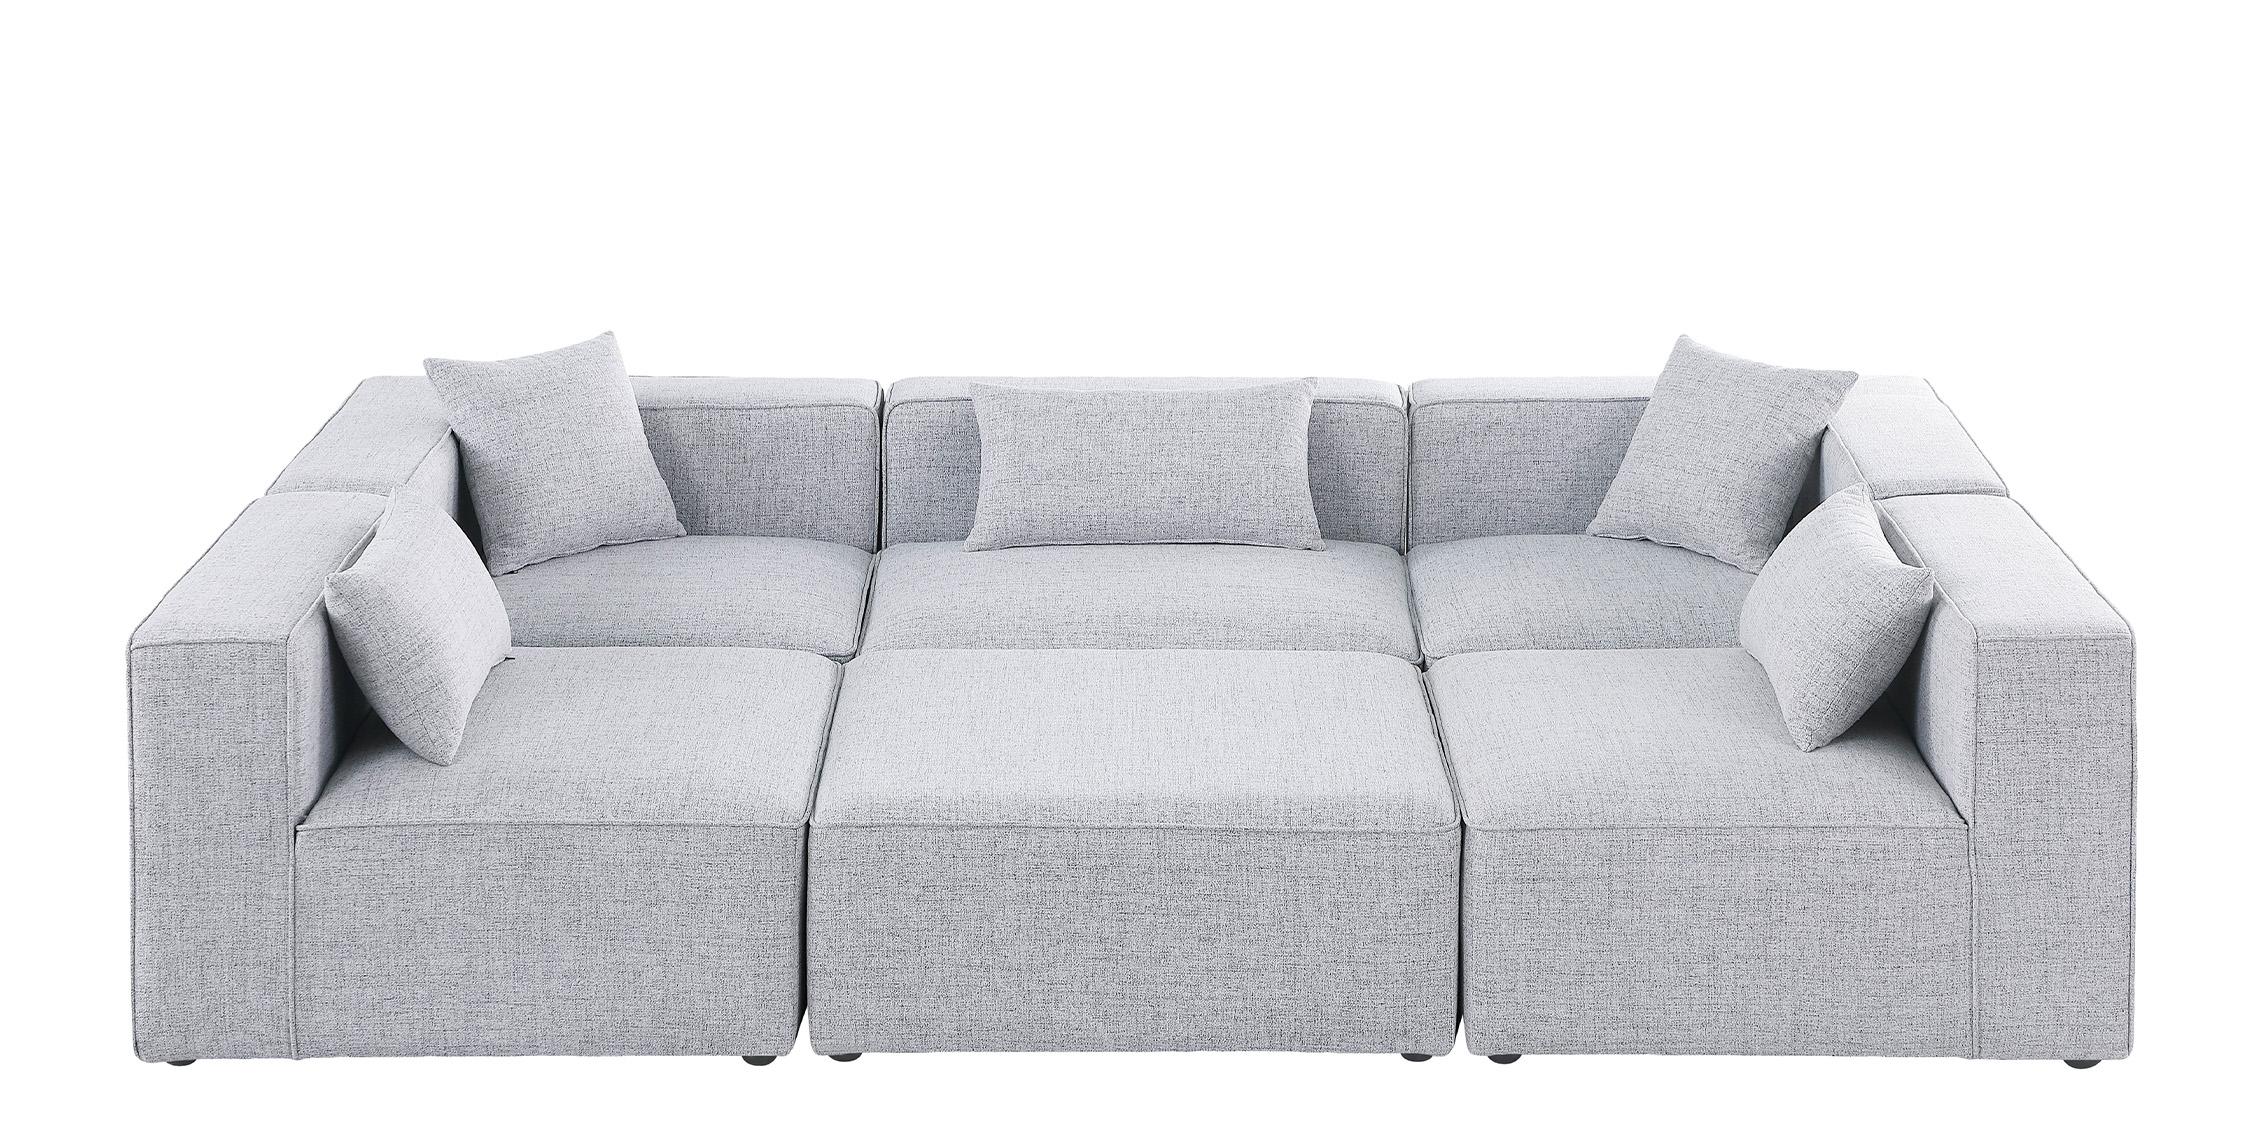 

    
Meridian Furniture CUBE 630Grey-Sec6C Modular Sectional Sofa Gray 630Grey-Sec6C
